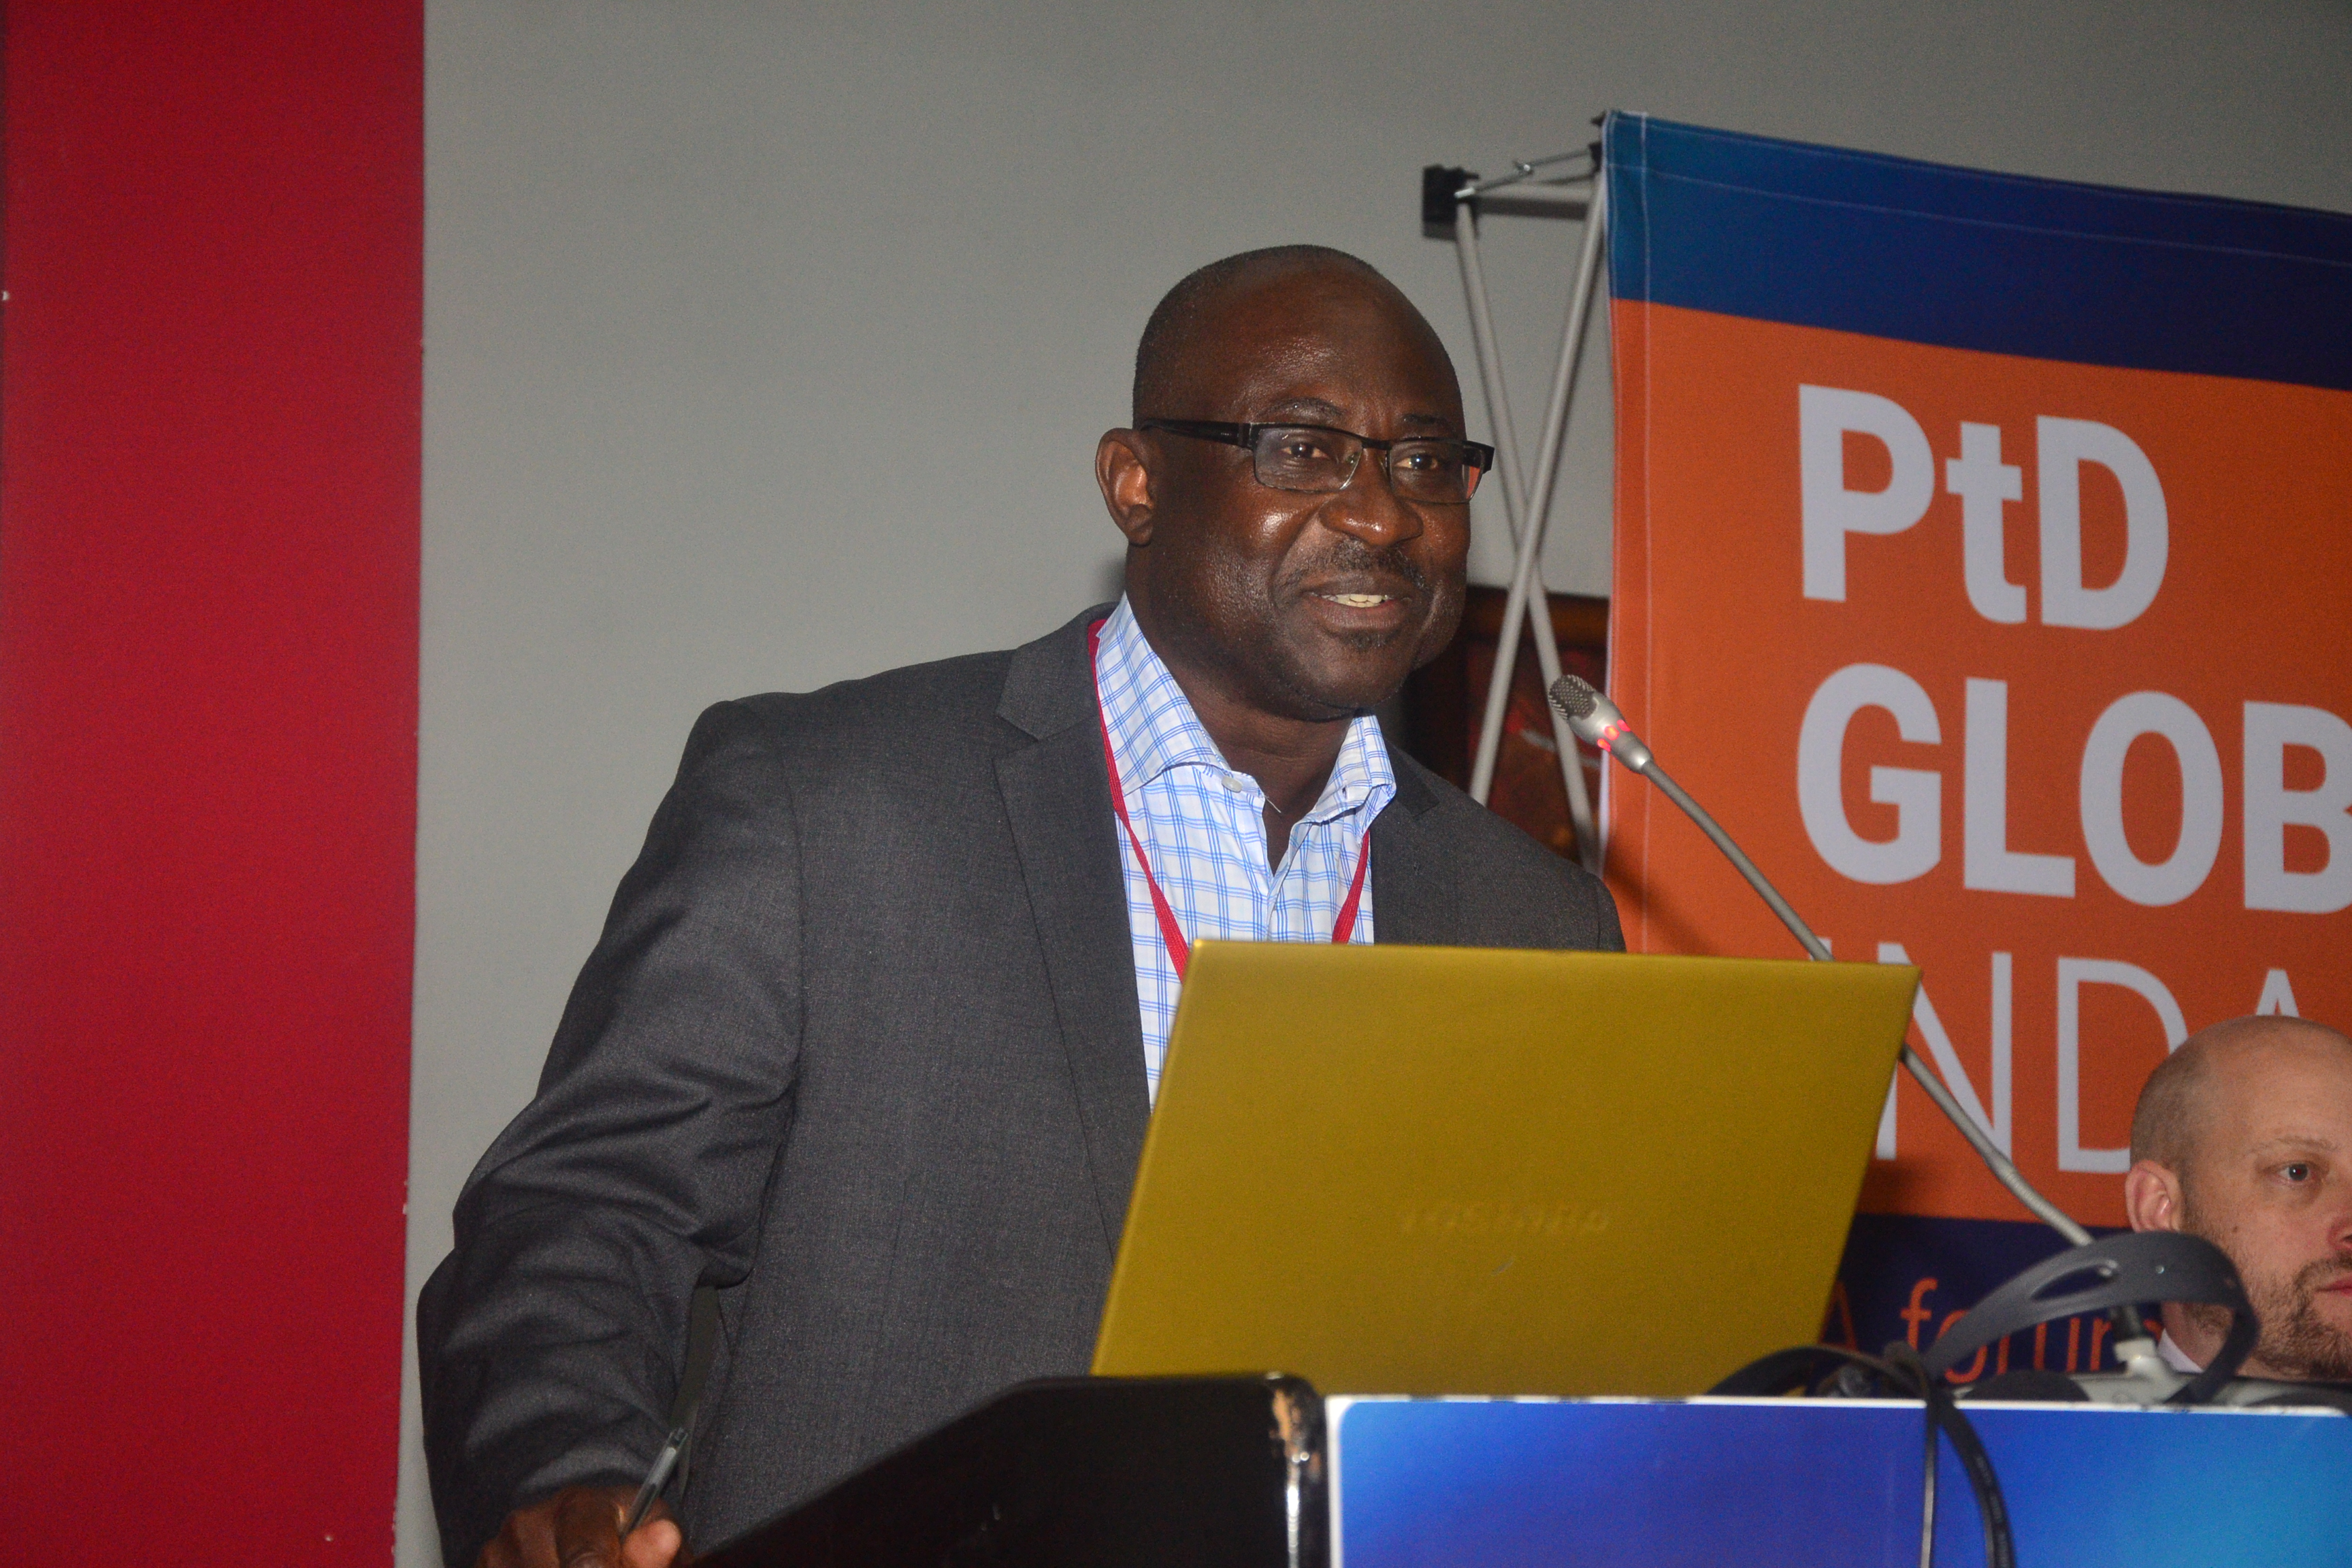 PtD's chair Francis (Kofi) Aboagye-Nyame speaking at the PtD Global Indaba